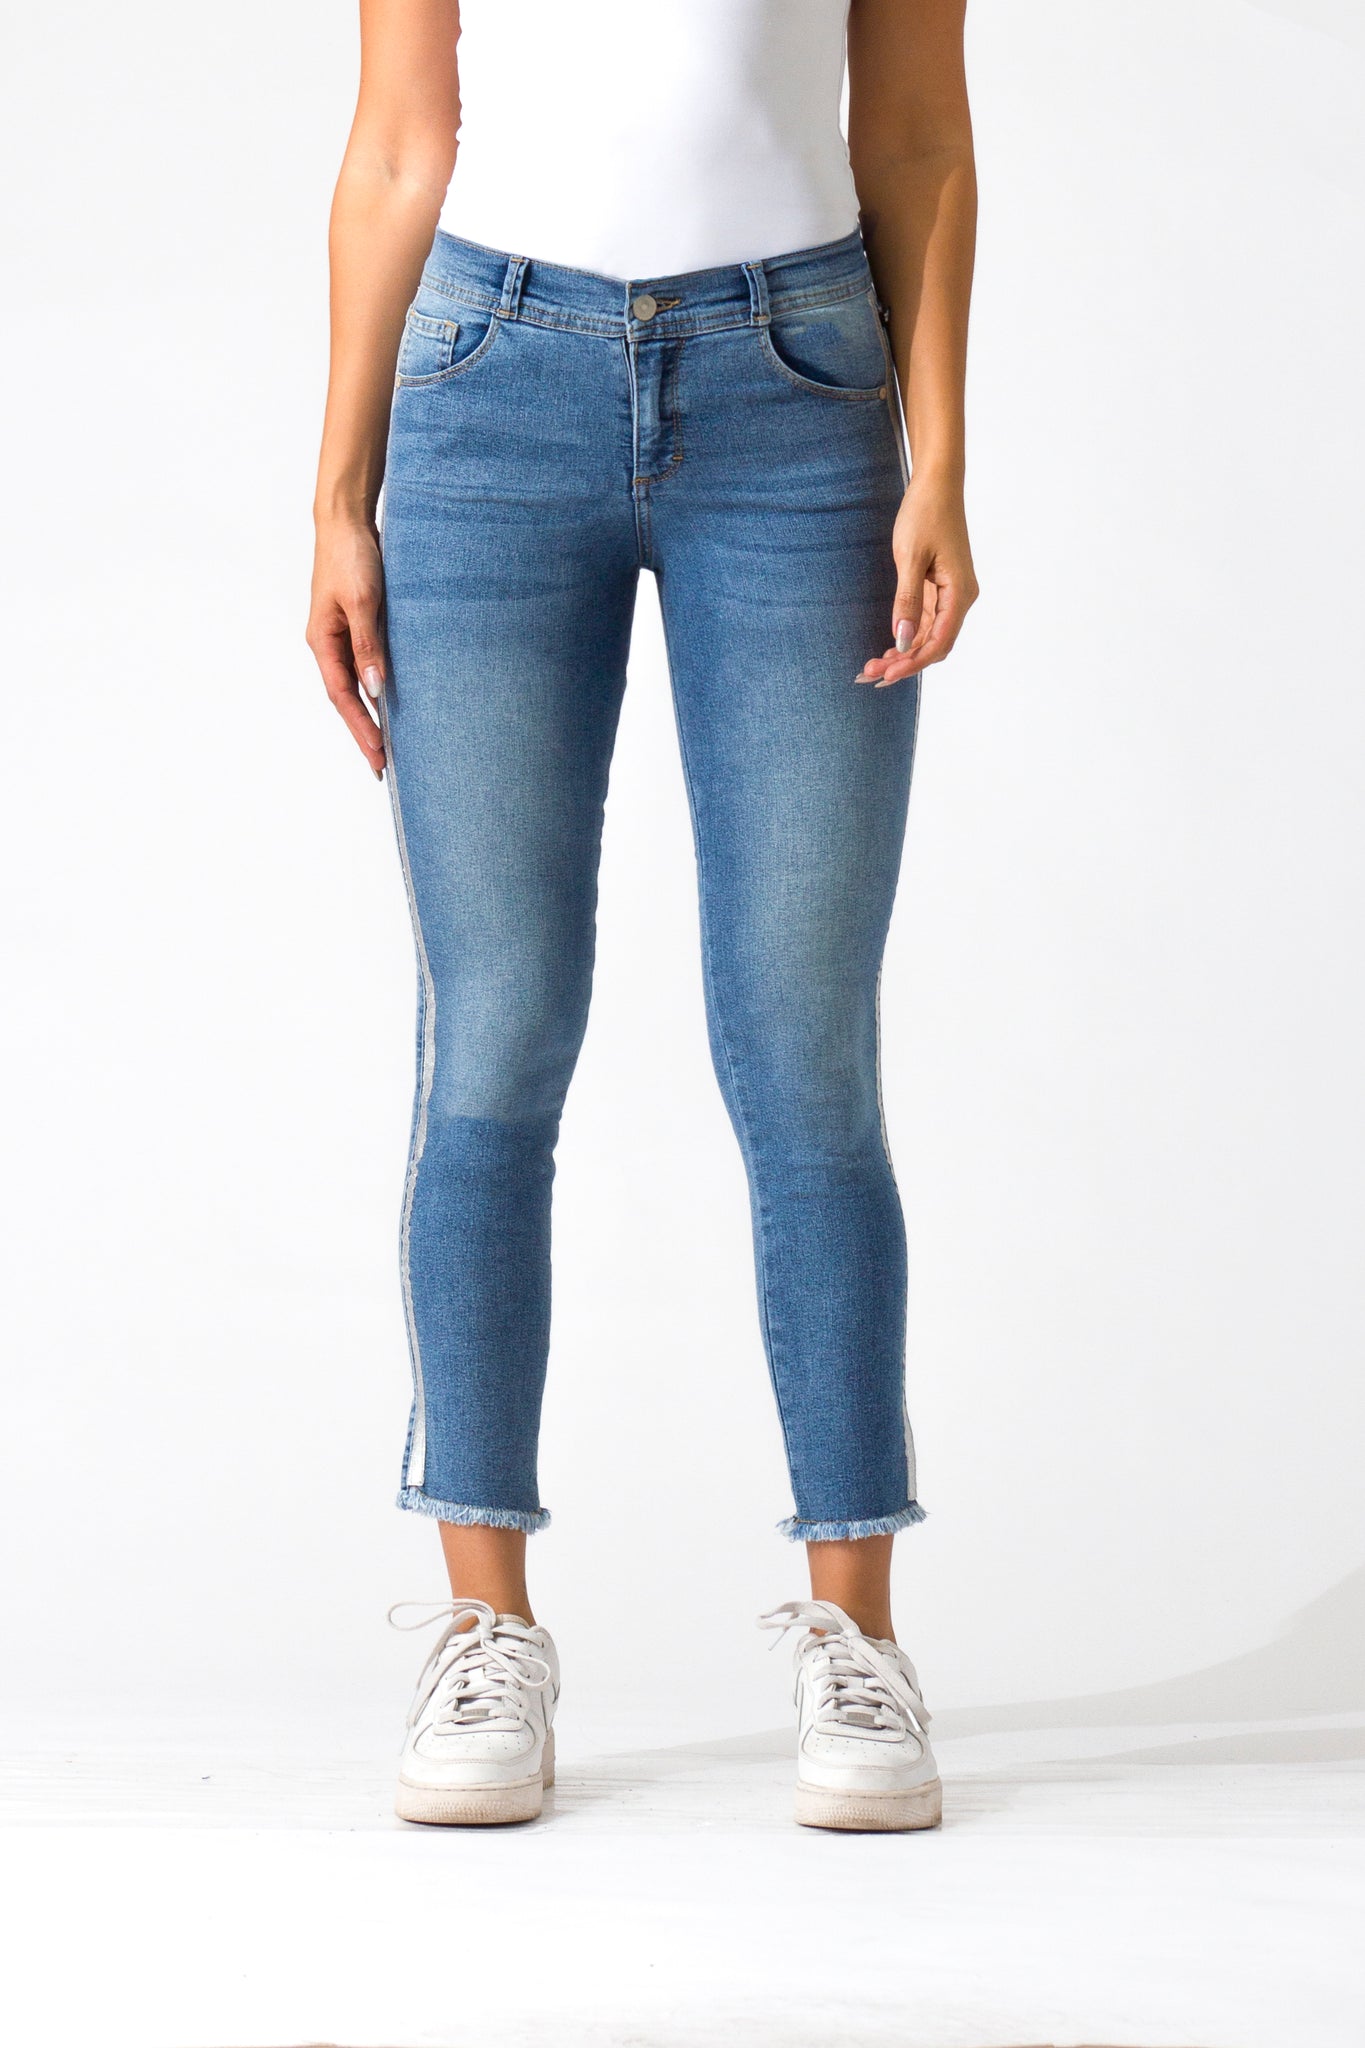 OHPOMP!® Cintura Media Skinny Jeans Ankle Azul Claro D1281